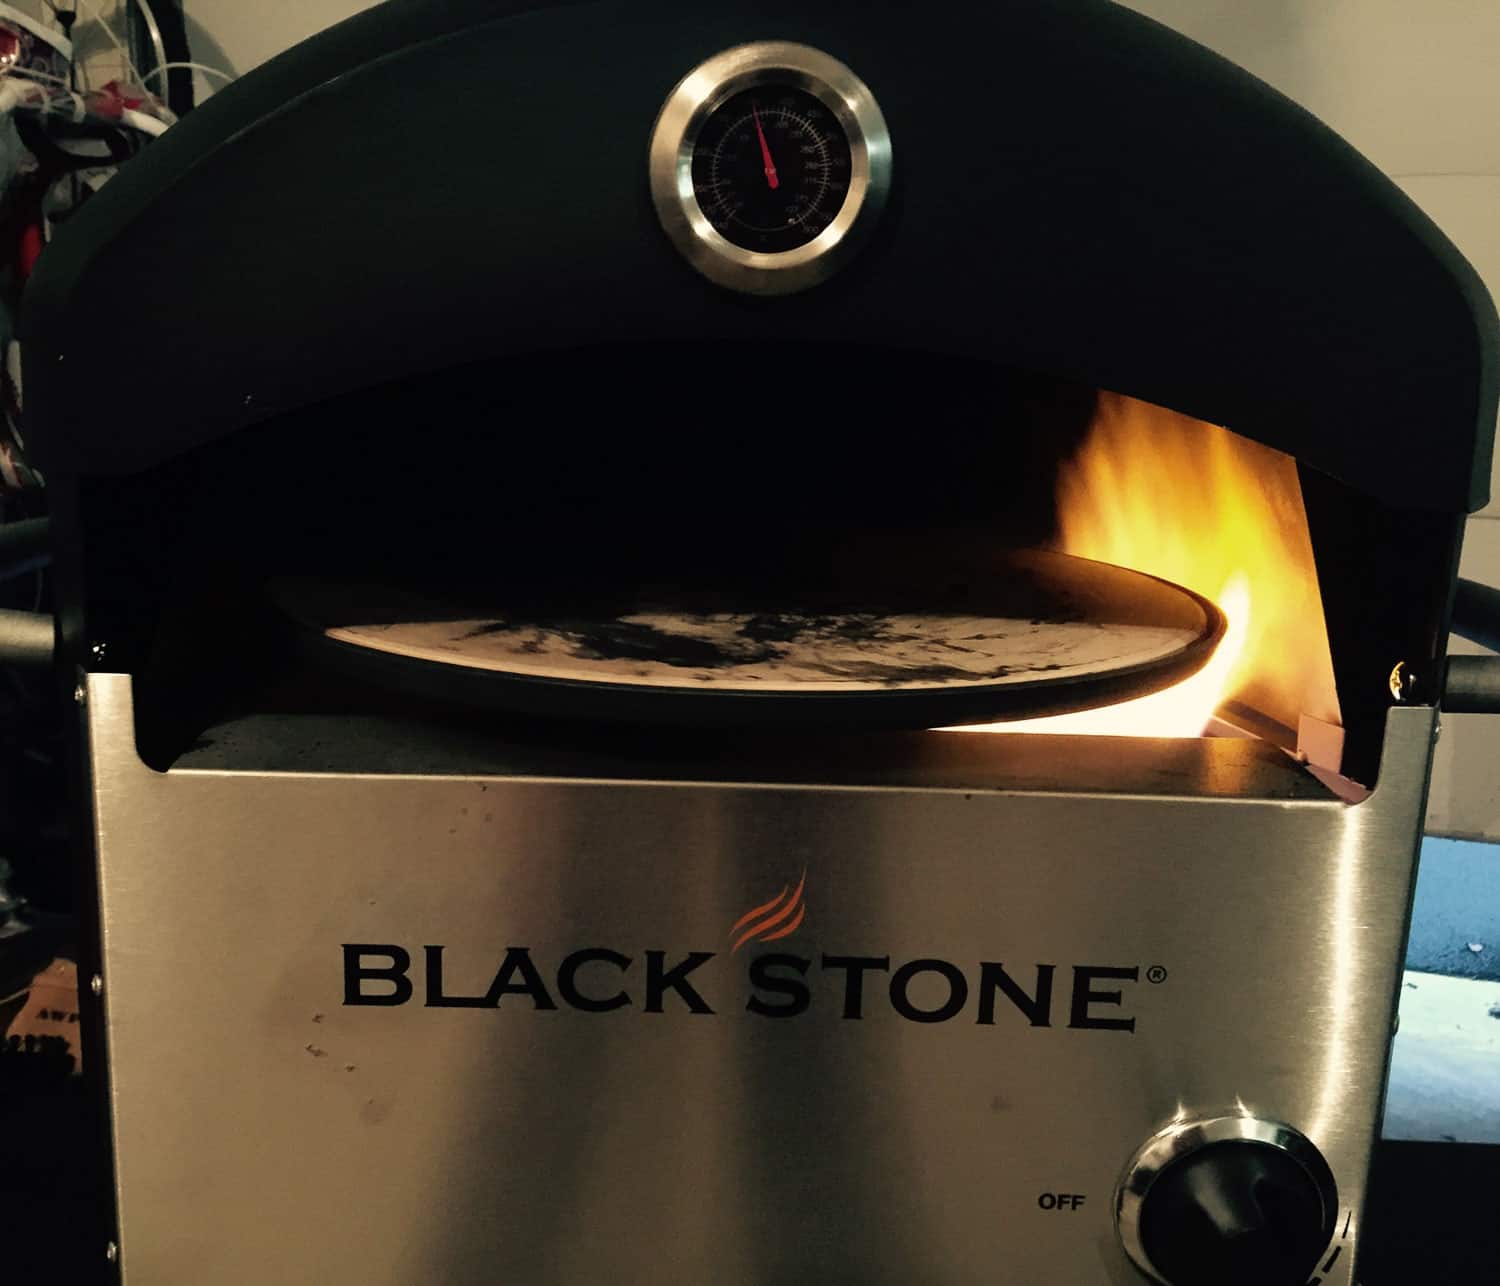 My Blackstone Pizza Oven